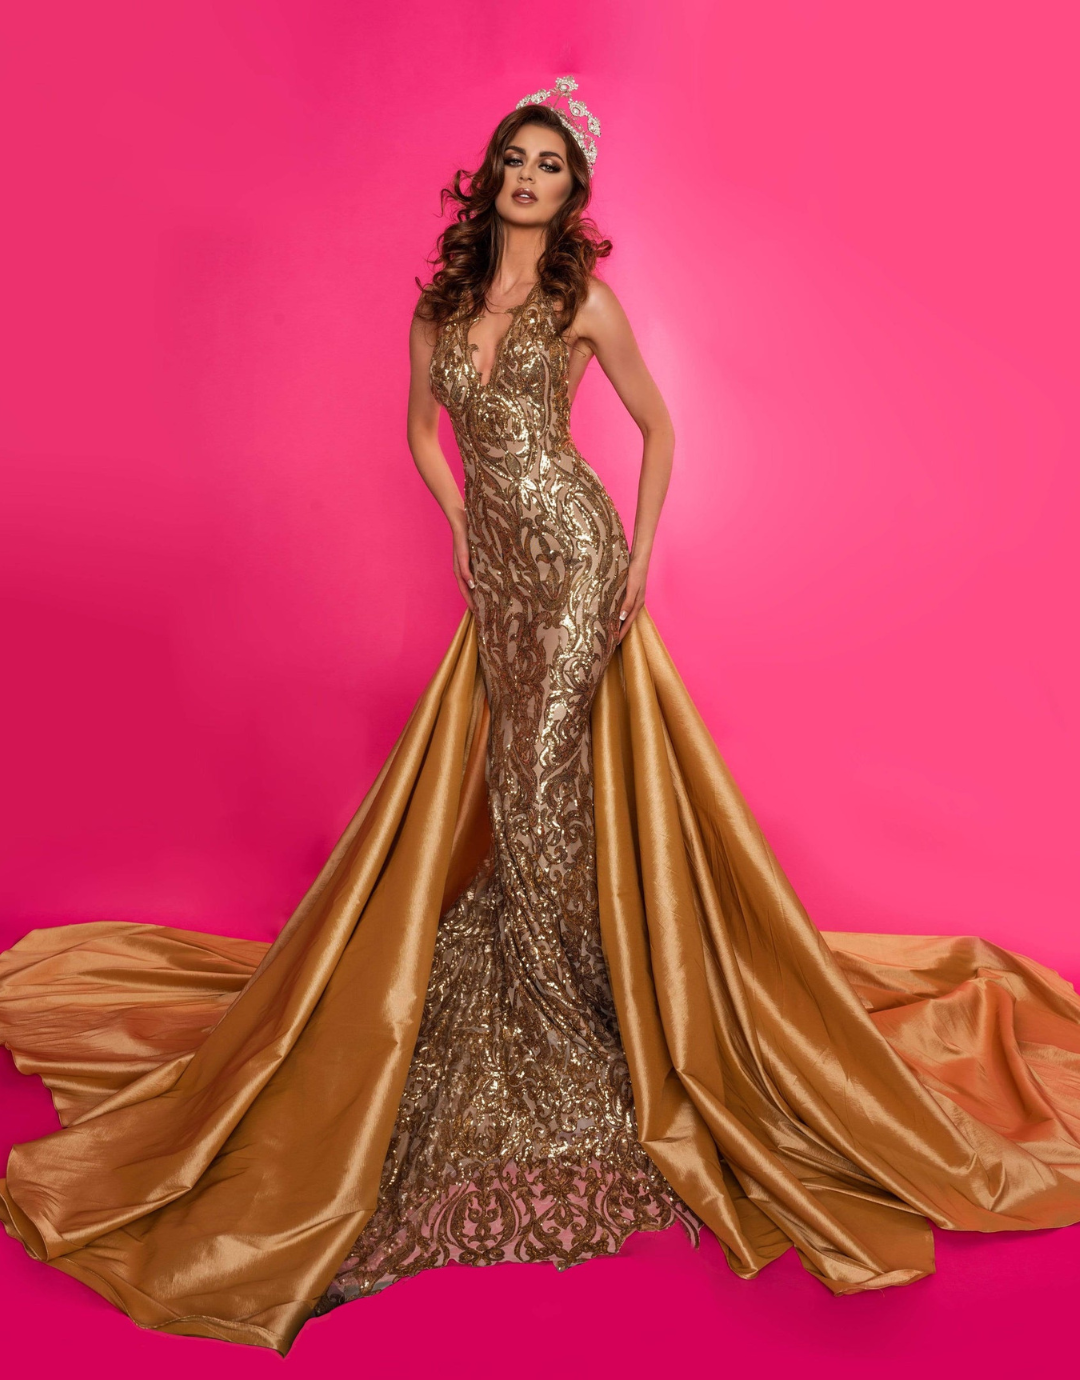 Sequin Dresses - Buy Sequin Dresses for Women Online | Myntra